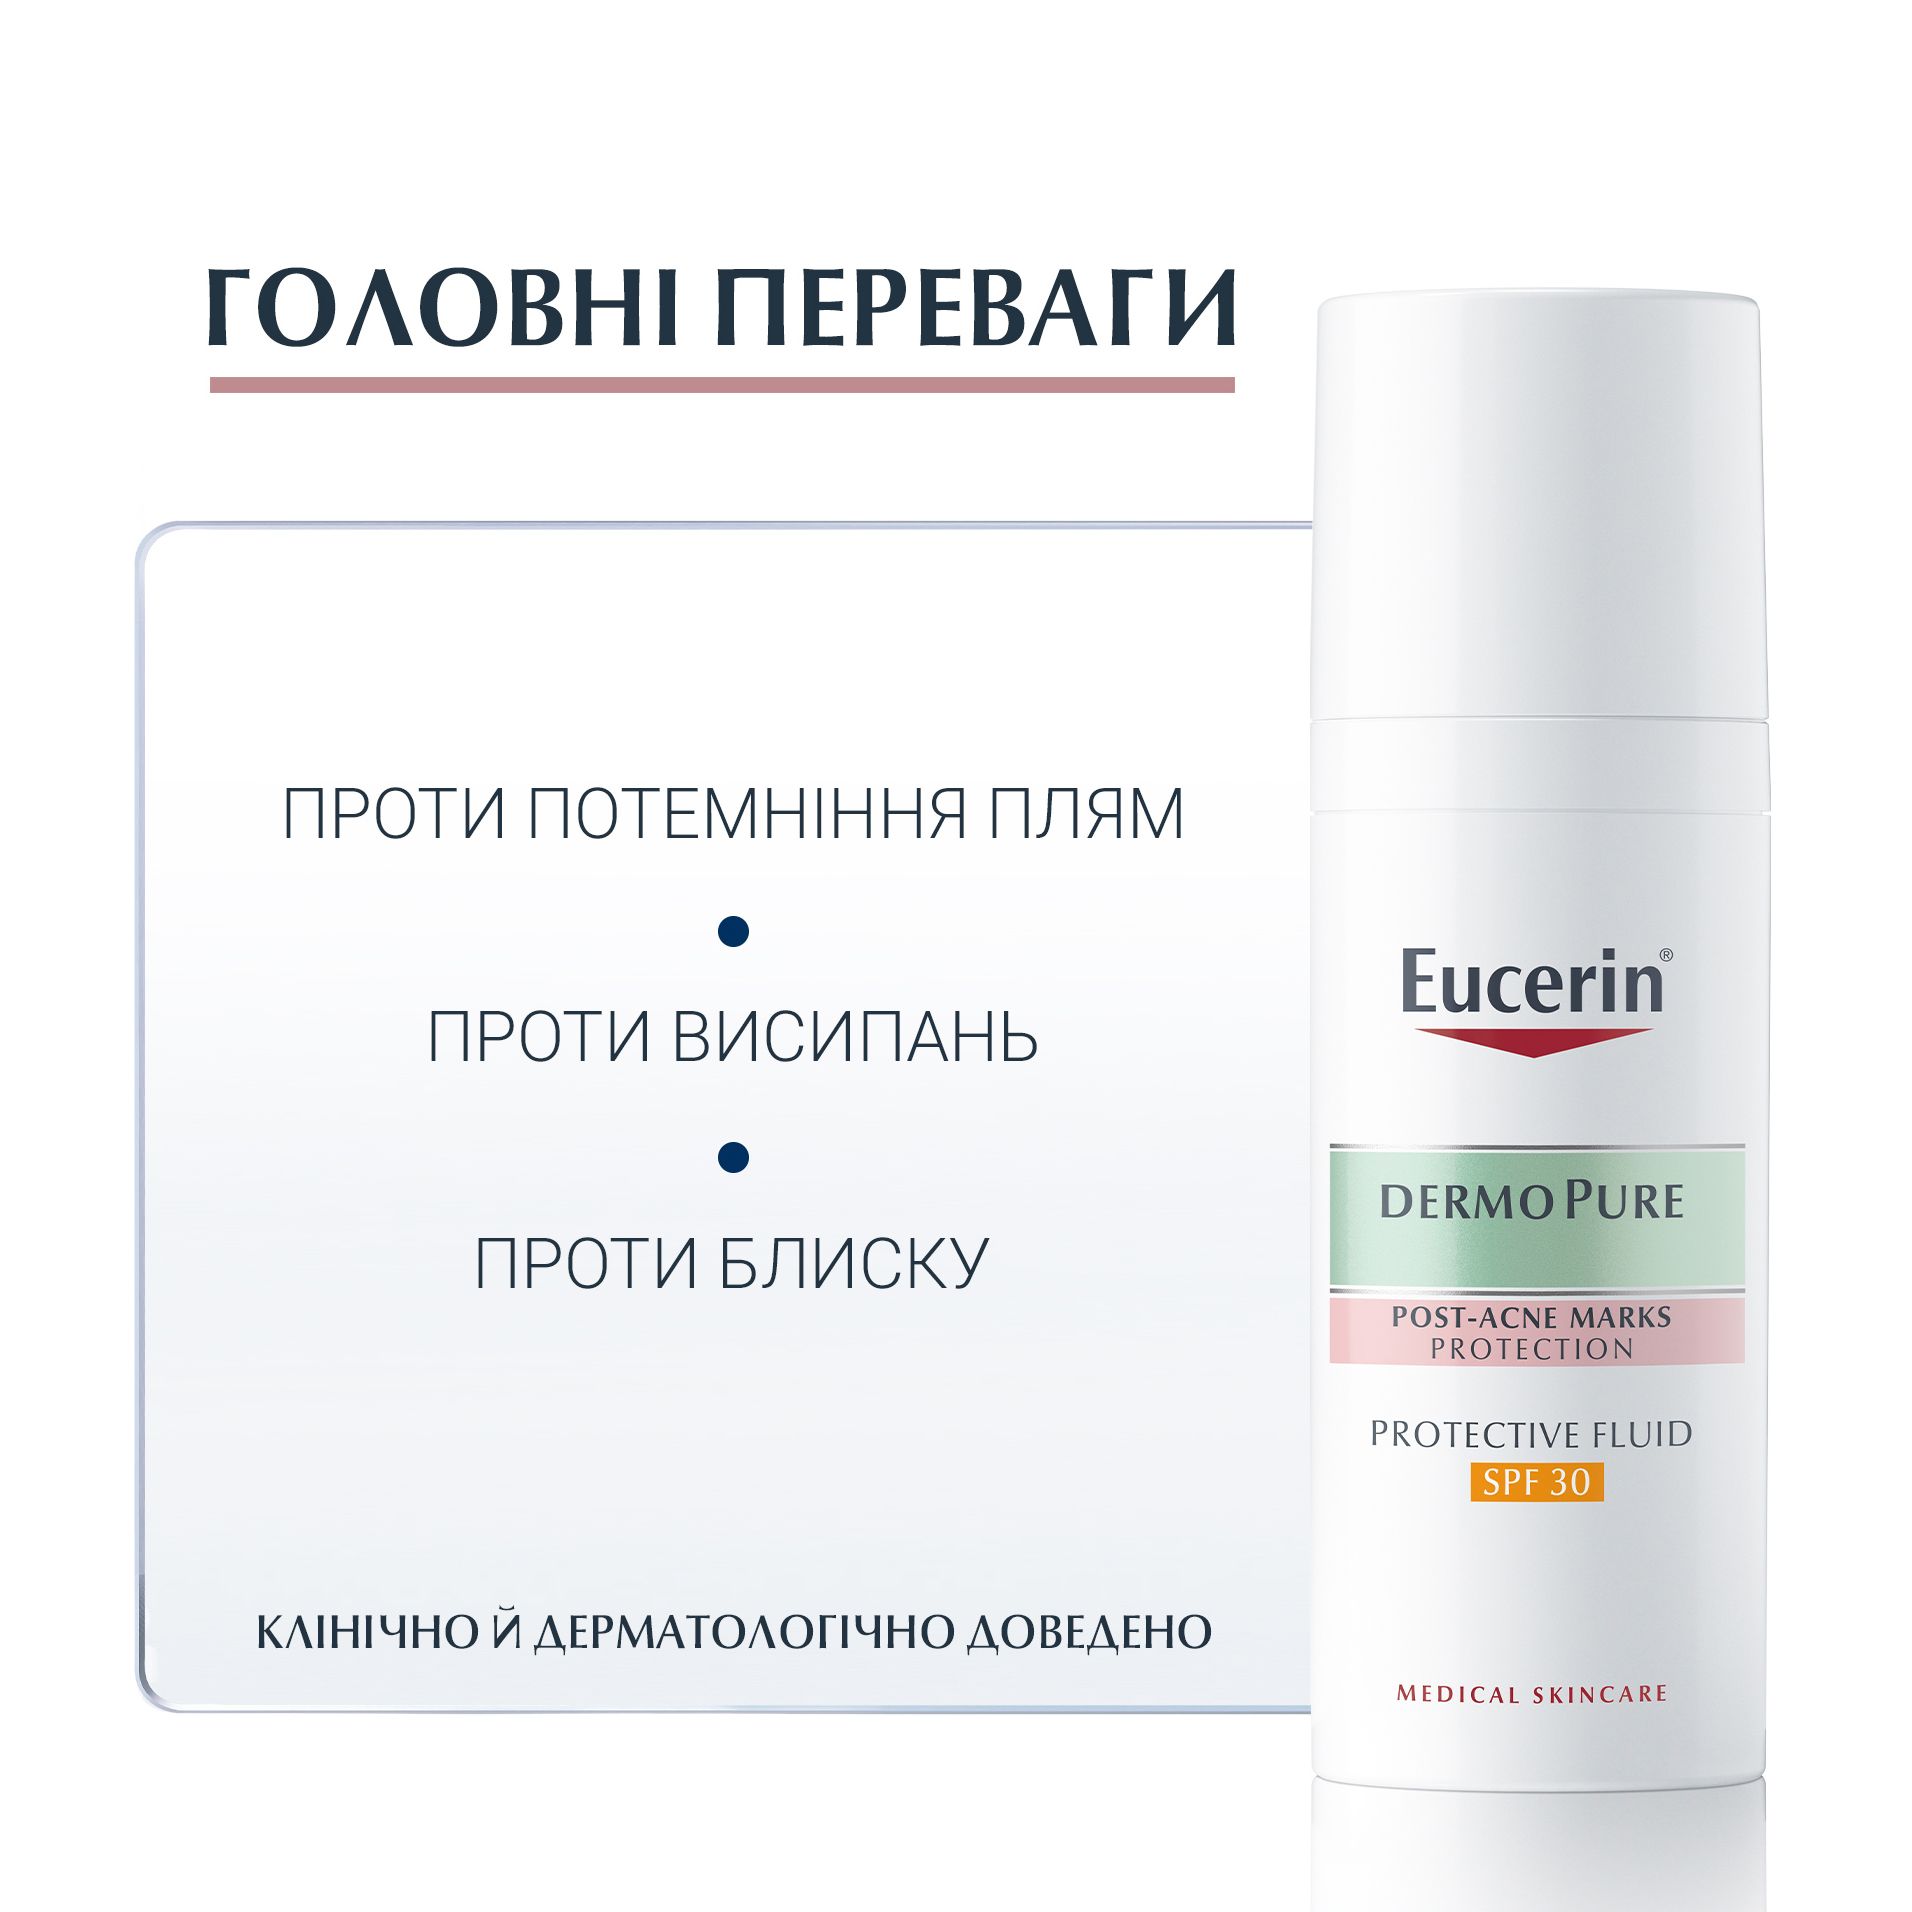 Захисний флюїд Eucerin Dermo Pure SPF 30 для проблемної шкіри, 50 мл - фото 2